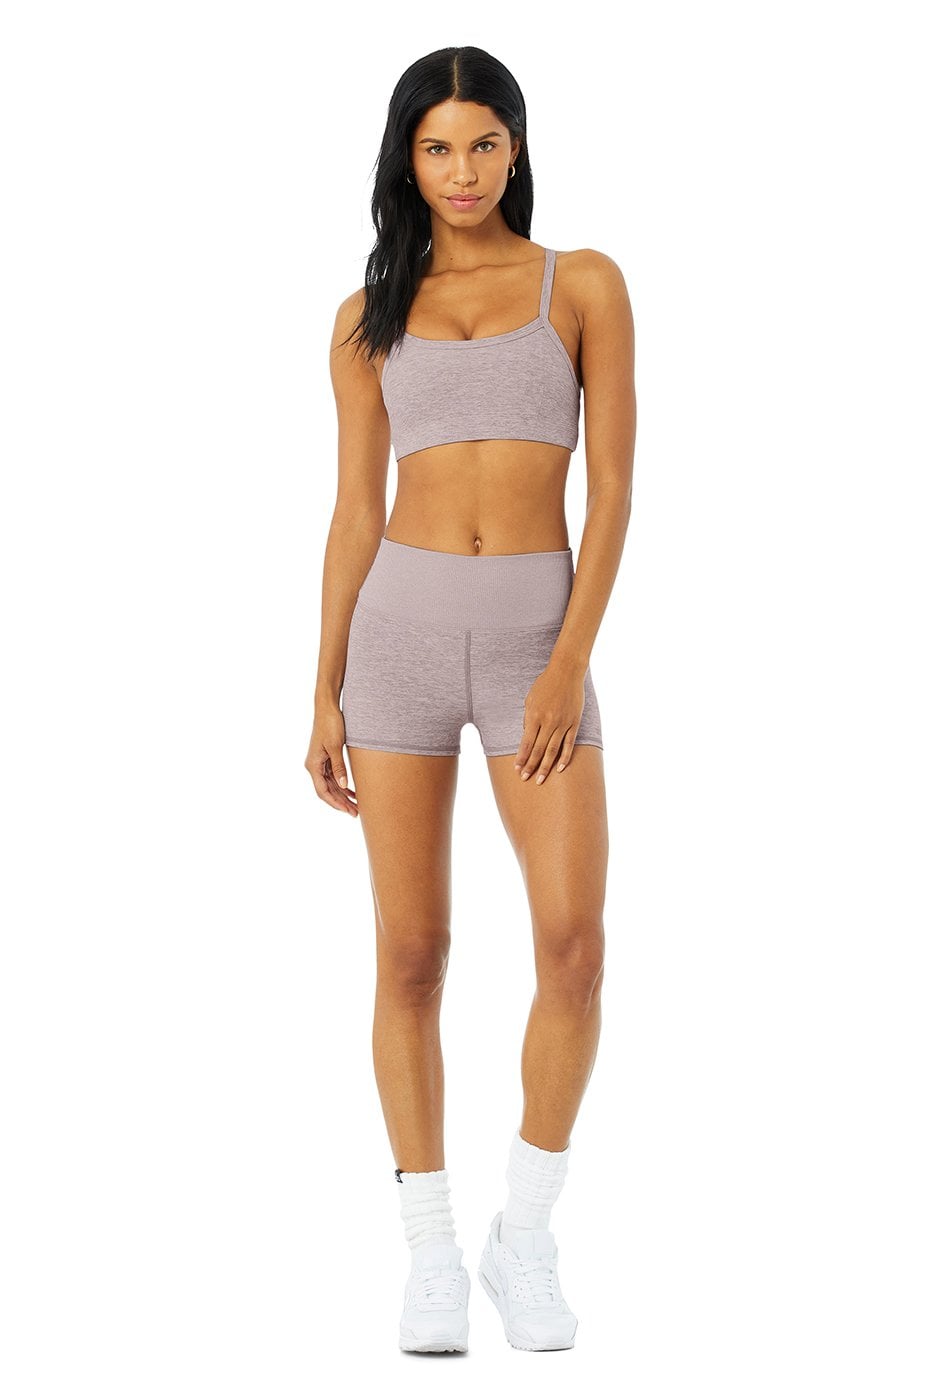 Alo Yoga Alosoft Aura Shorts In Grey